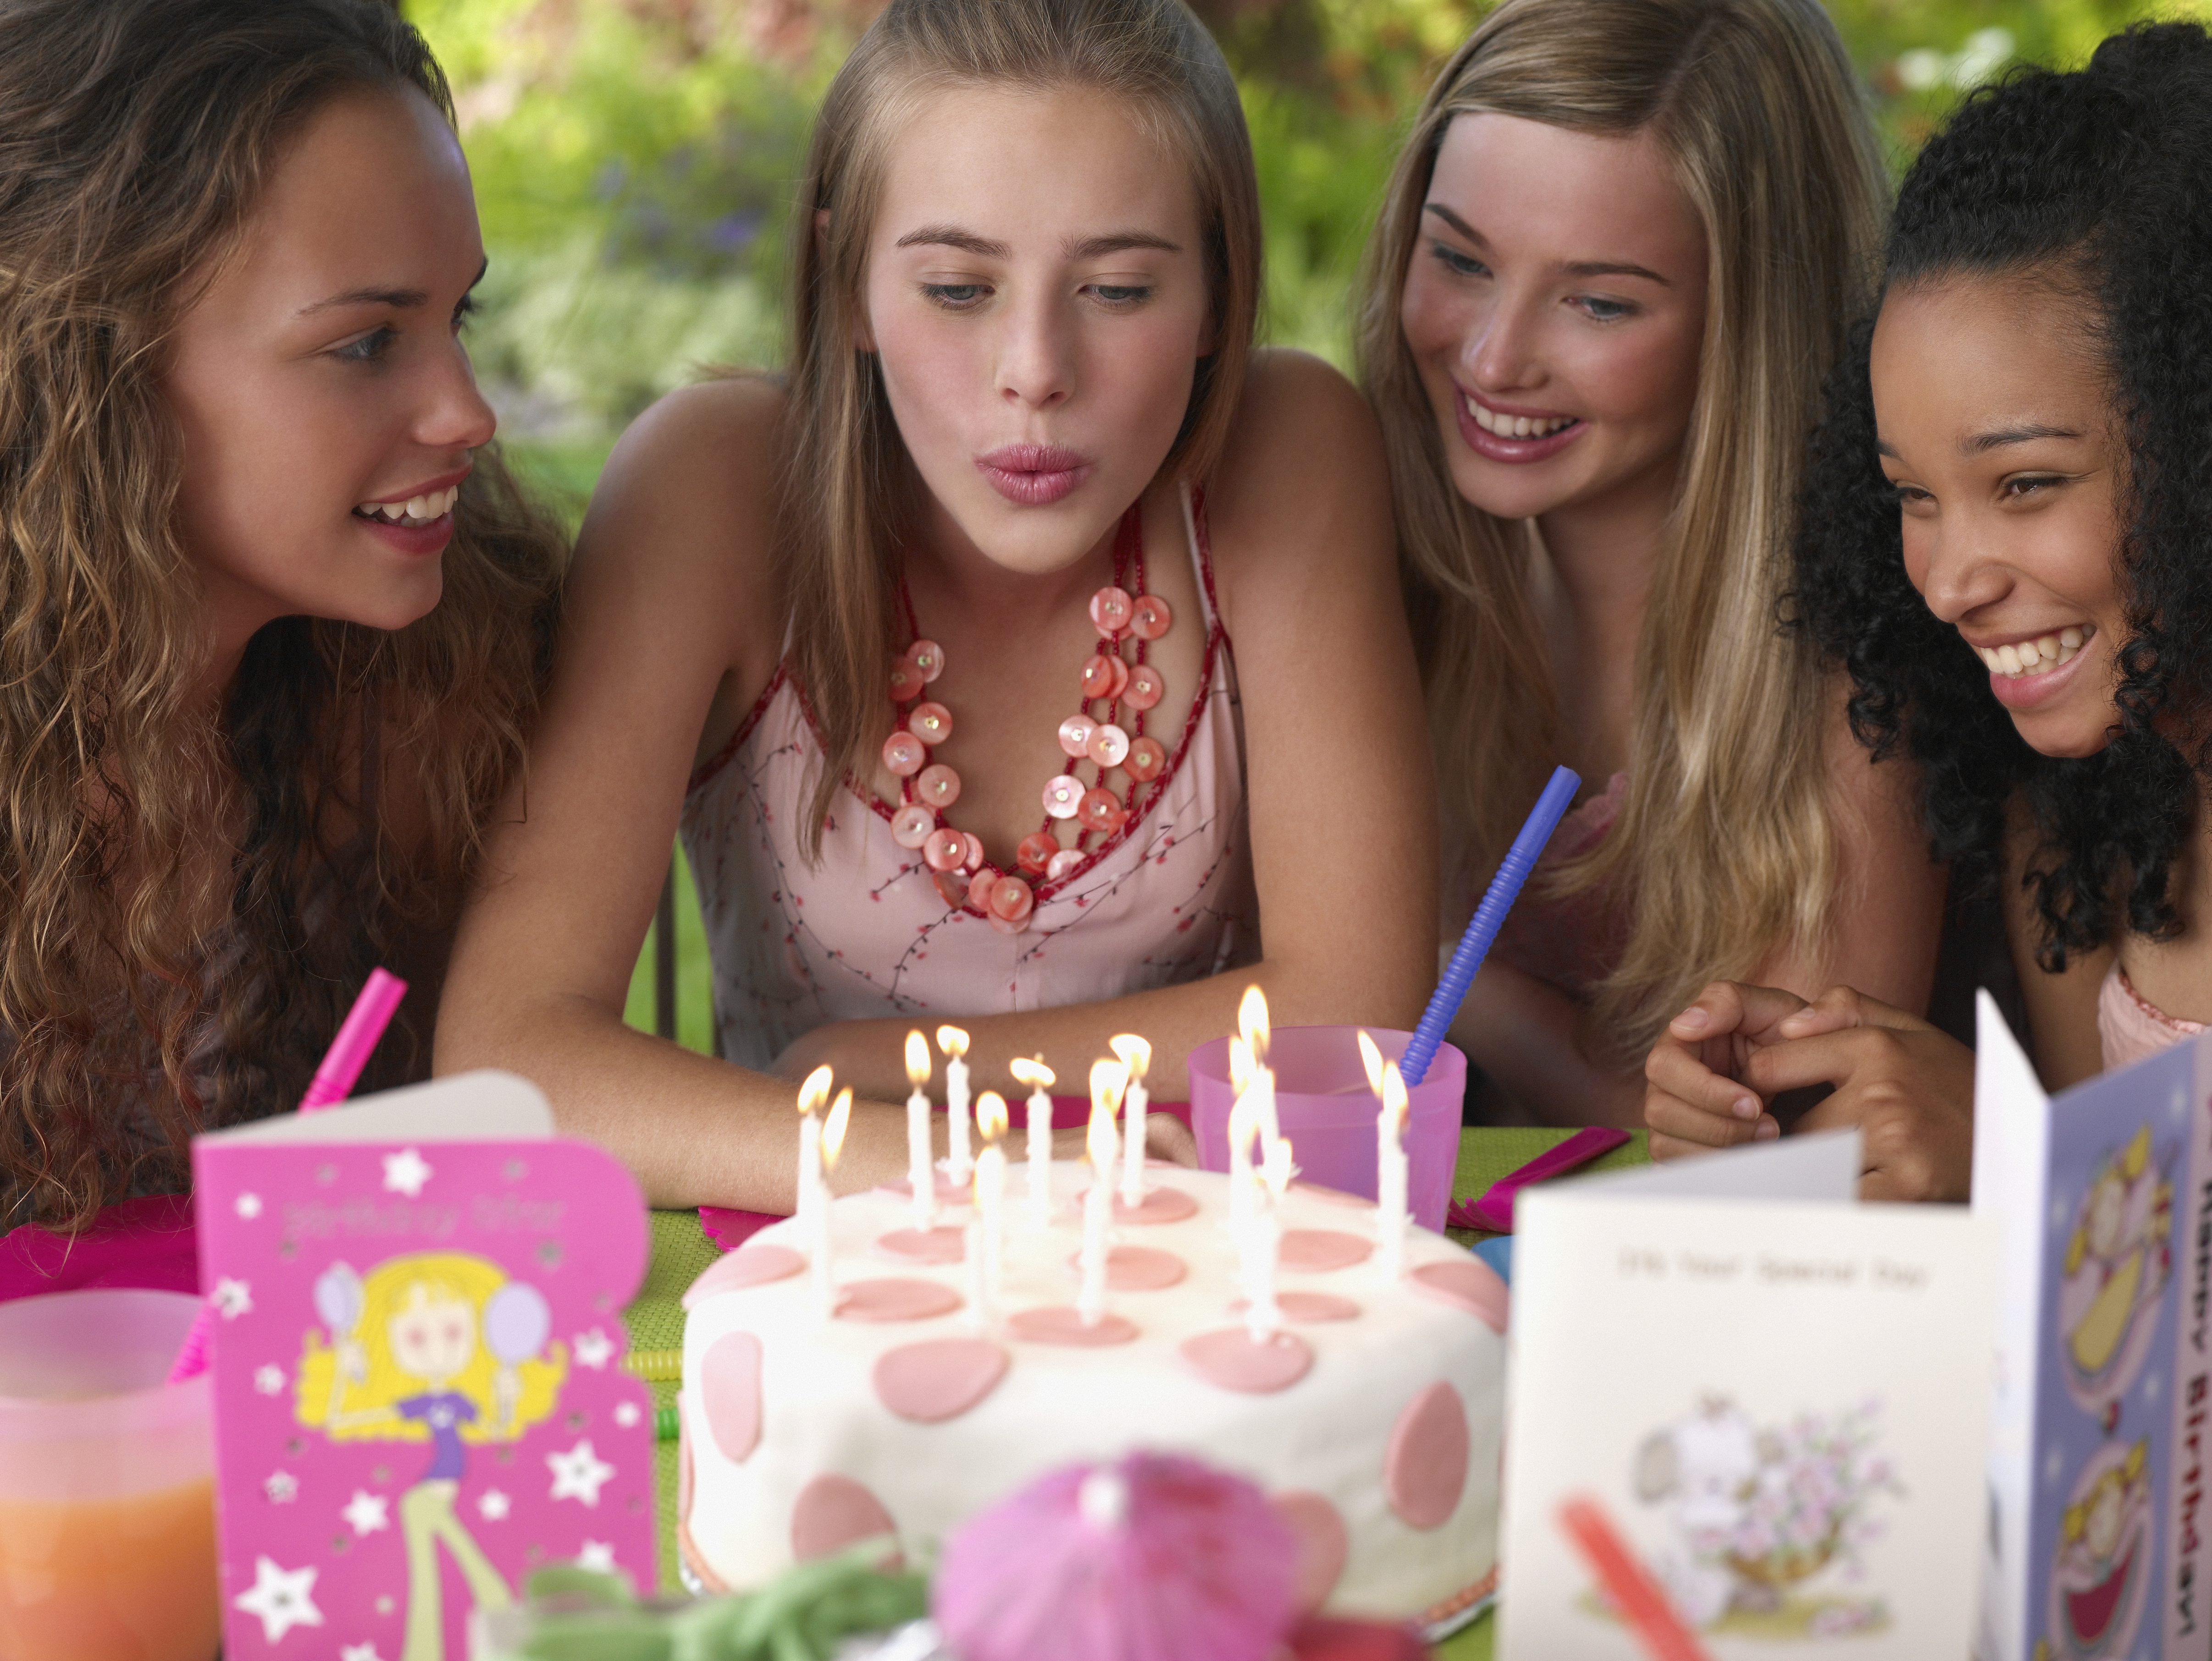 Vier jugendliche Mädchen auf einer Geburtstagsparty lächelnd im Freien | Quelle: Getty Images